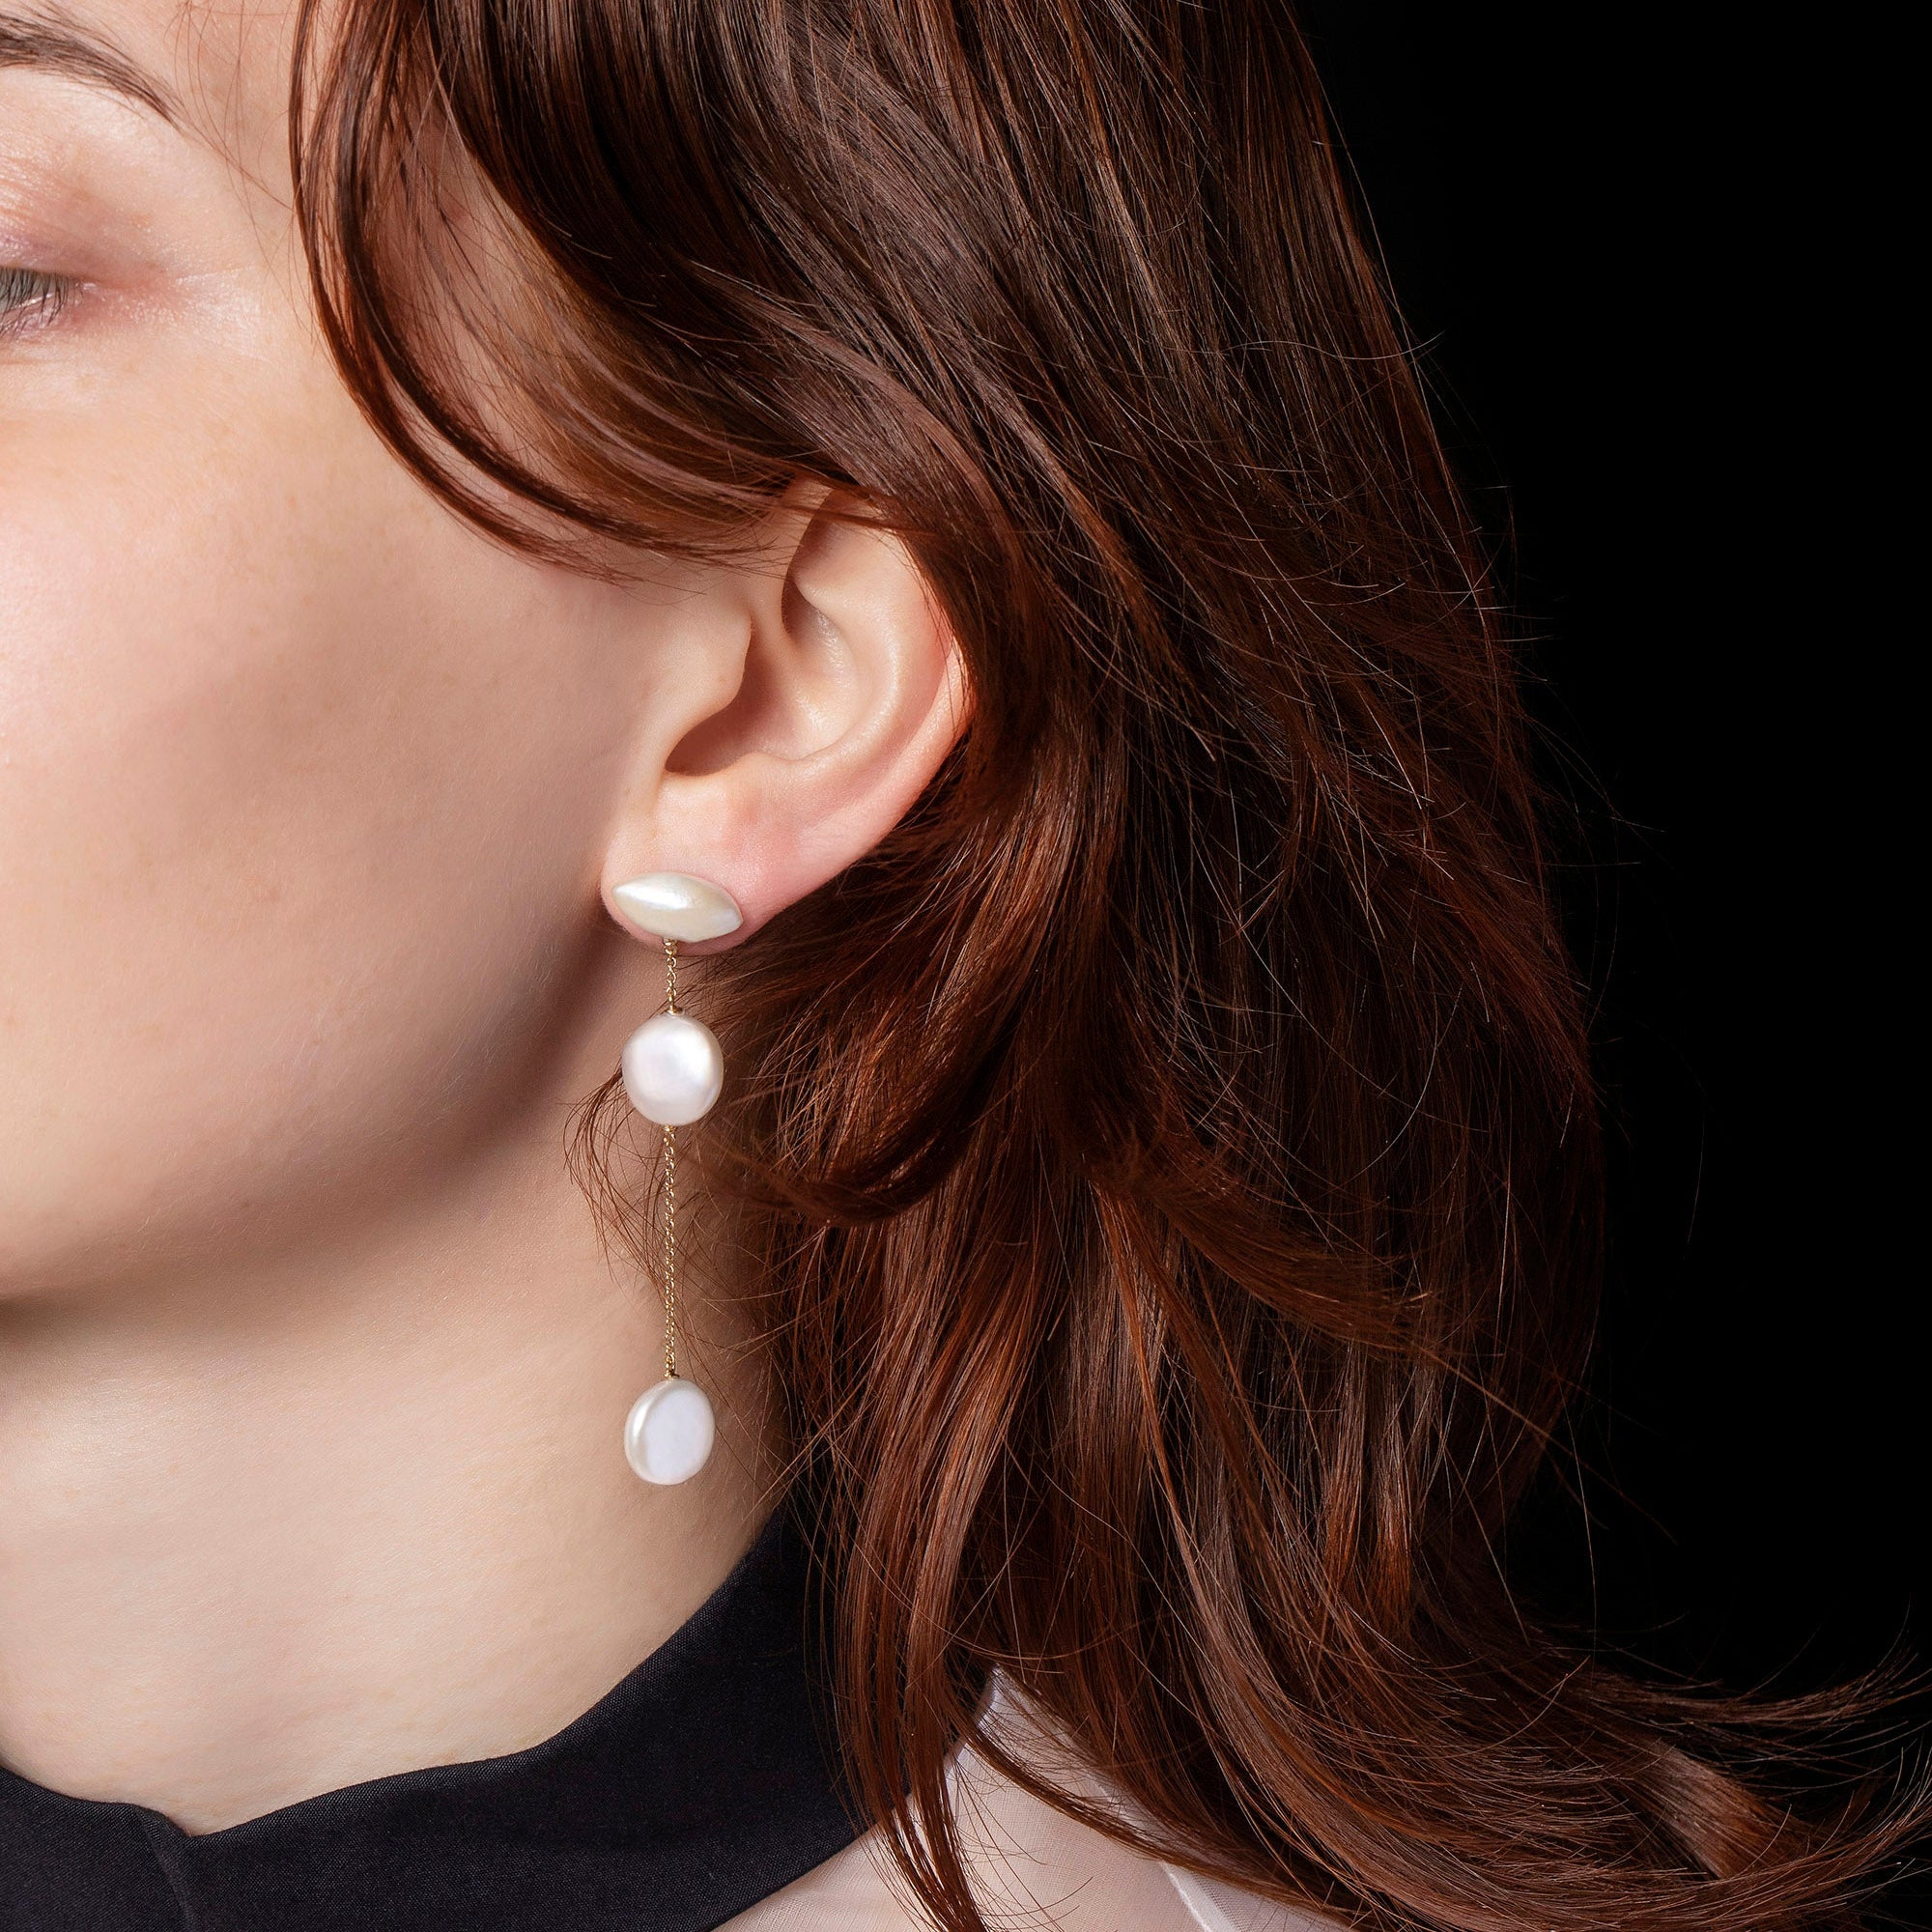 product_details::Idas Earrings on model.